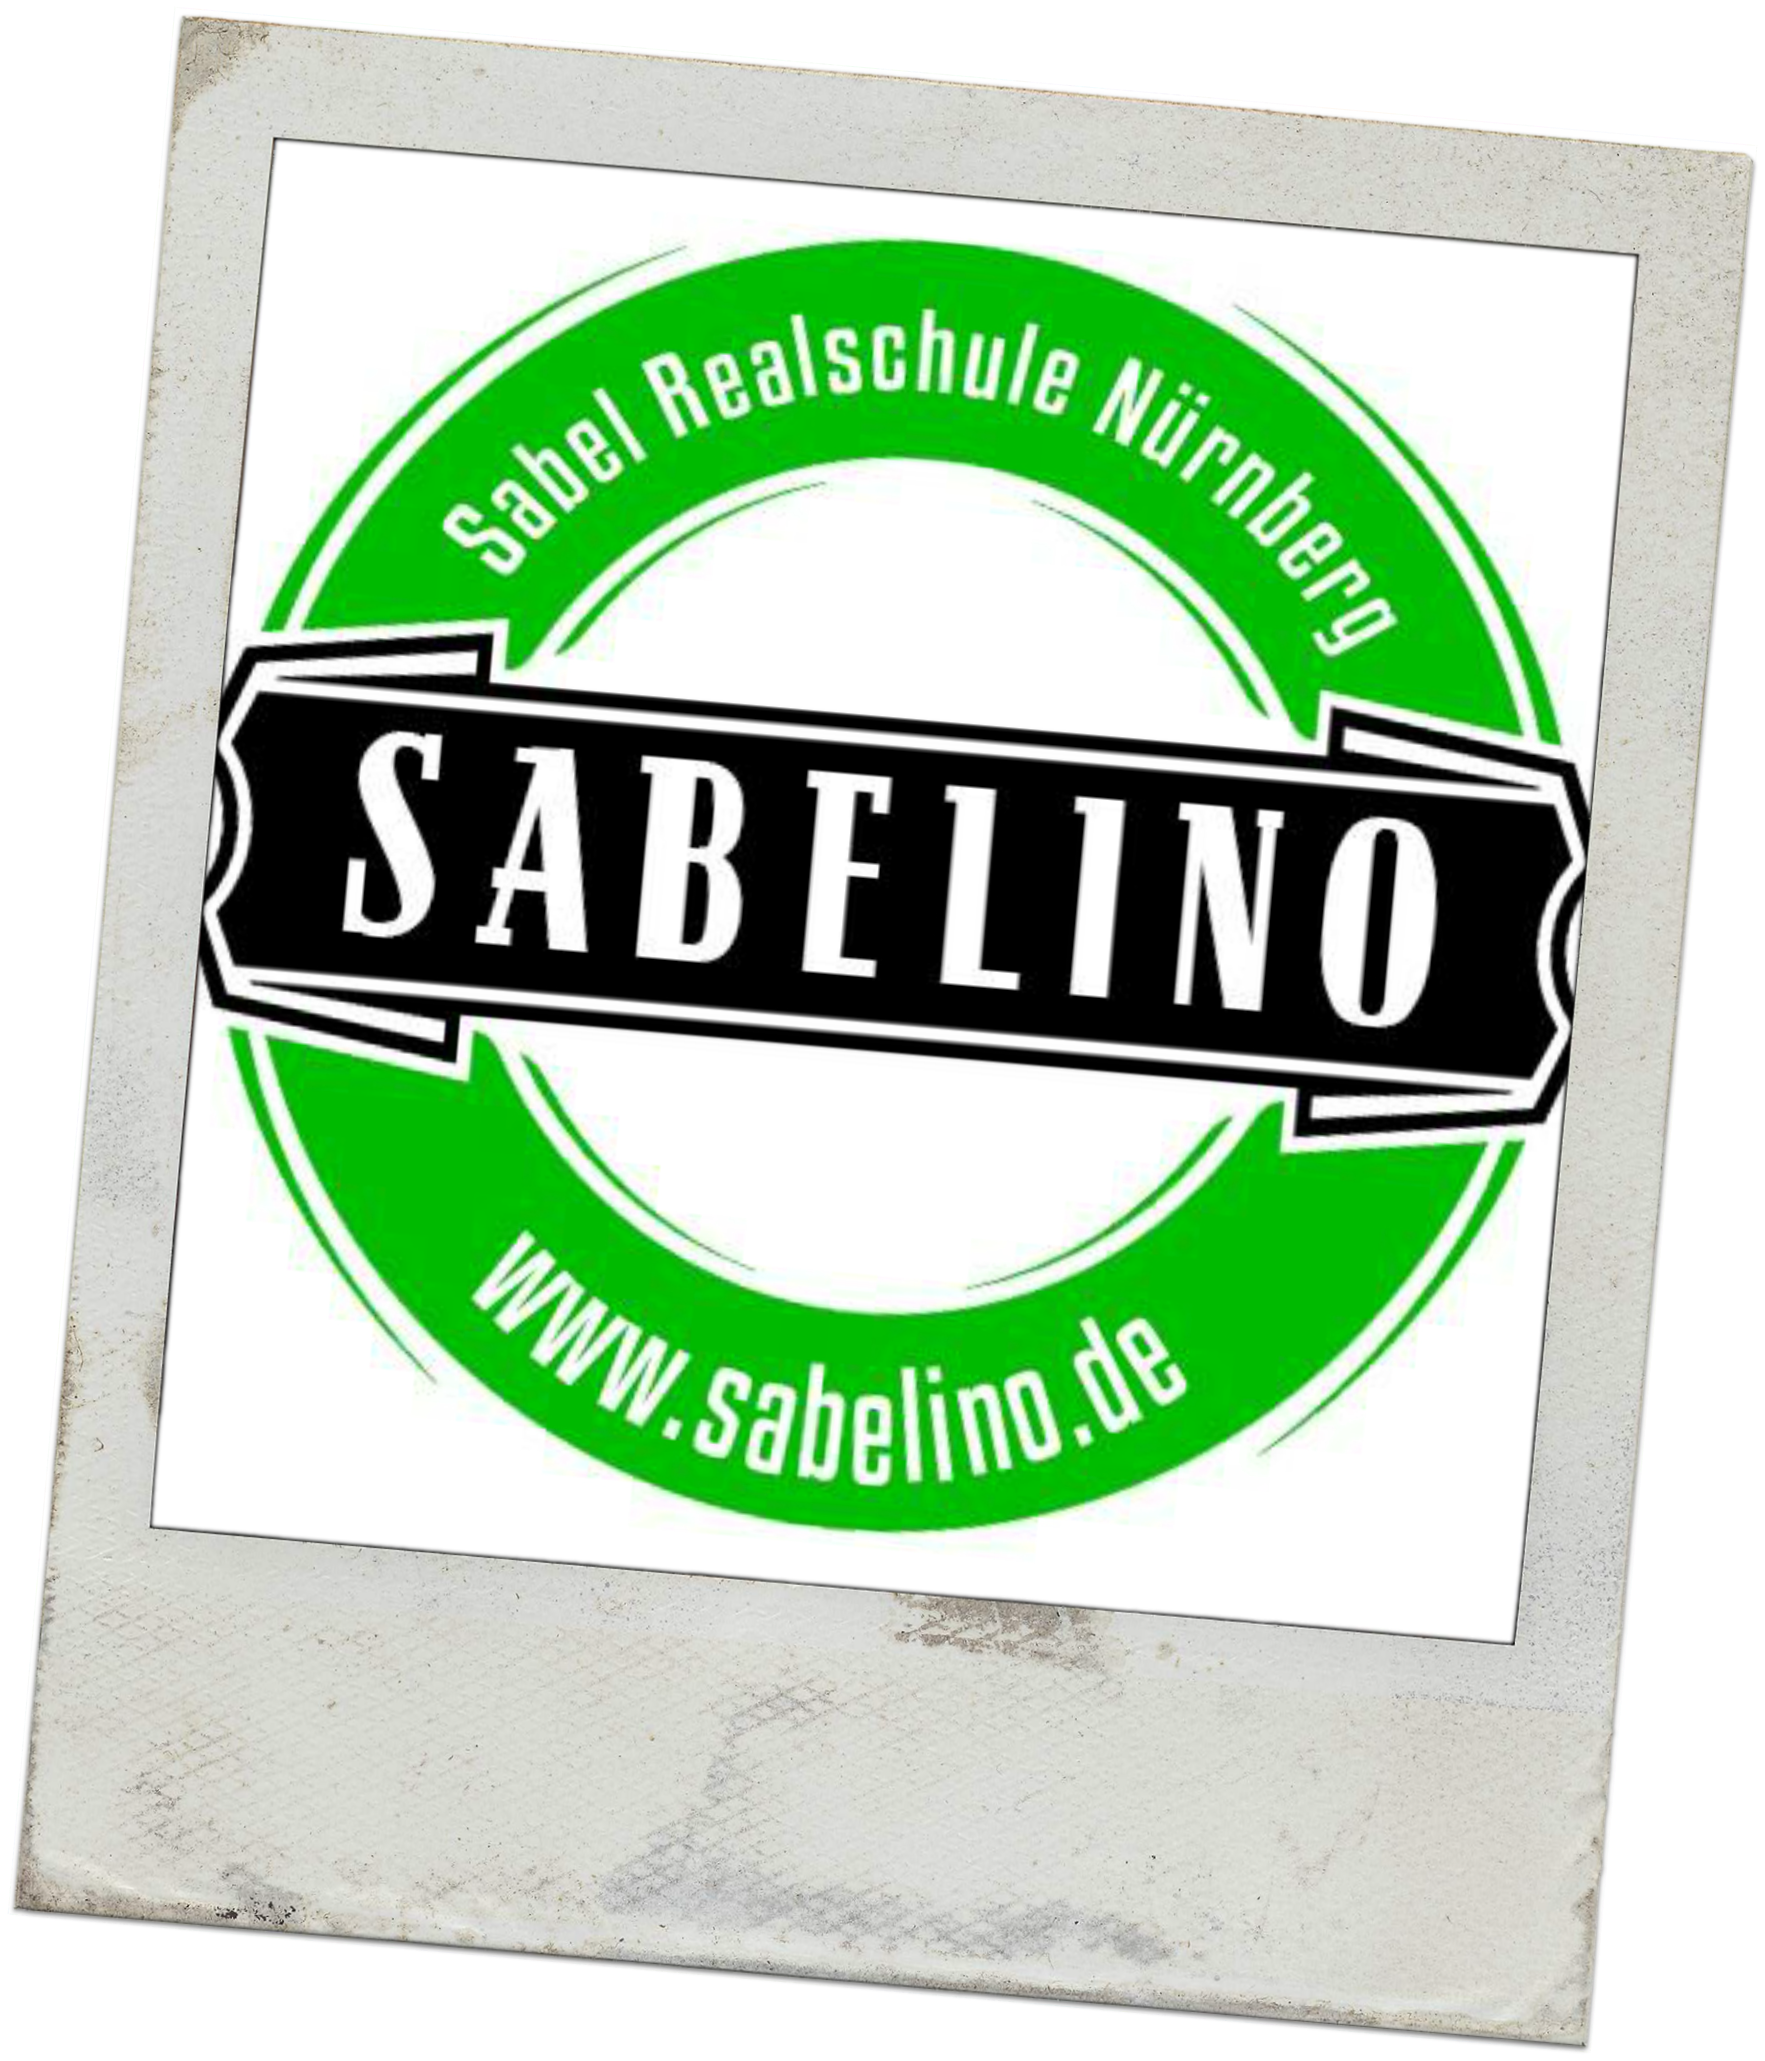 (c) Sabelino.de